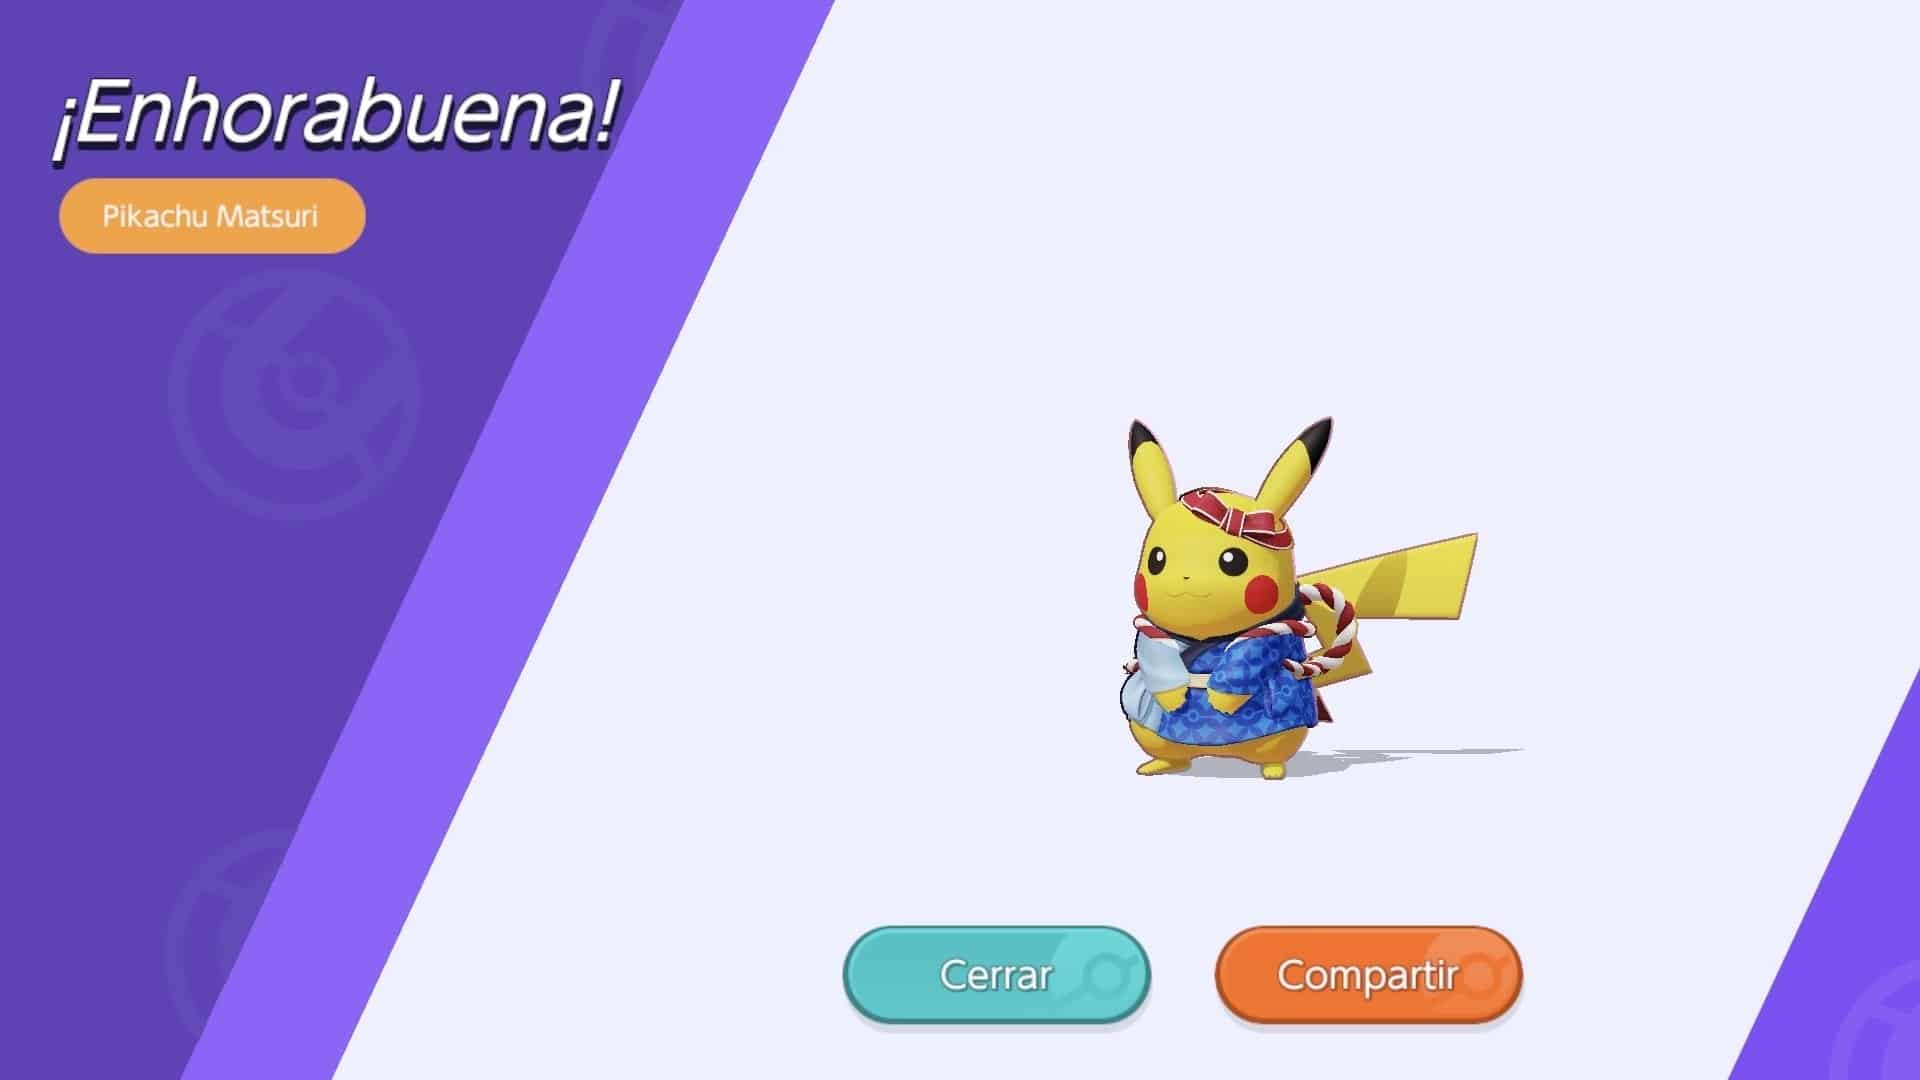 El evento de celebración de descargas con Pikachu Matsuri ya está disponible en Pokémon Unite